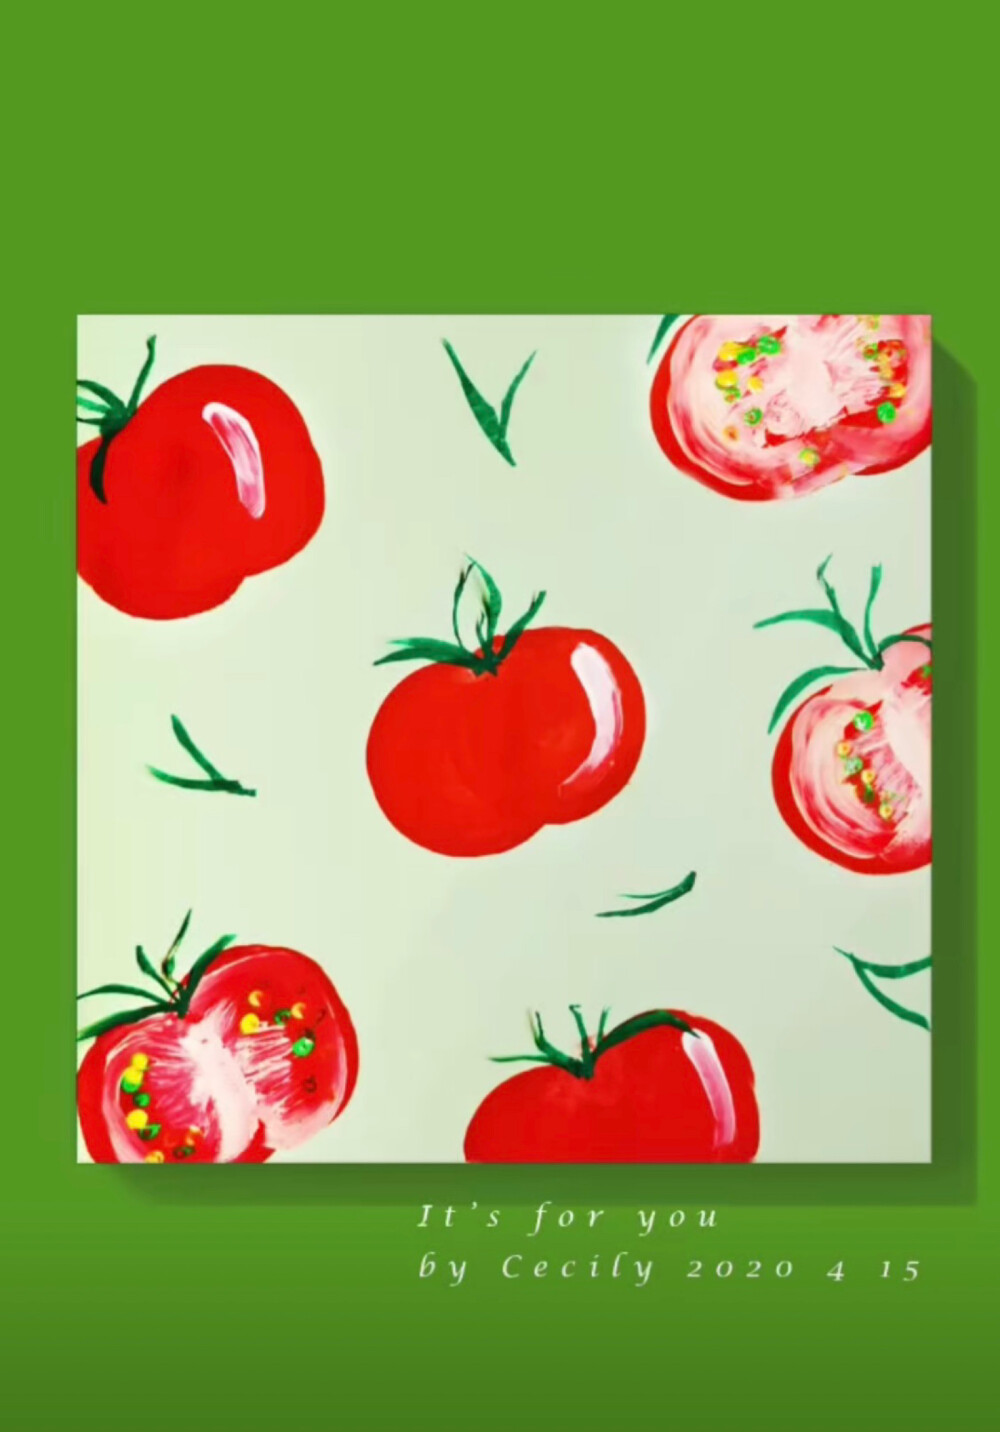 番茄草莓水粉画 - 堆糖,美图壁纸兴趣社区